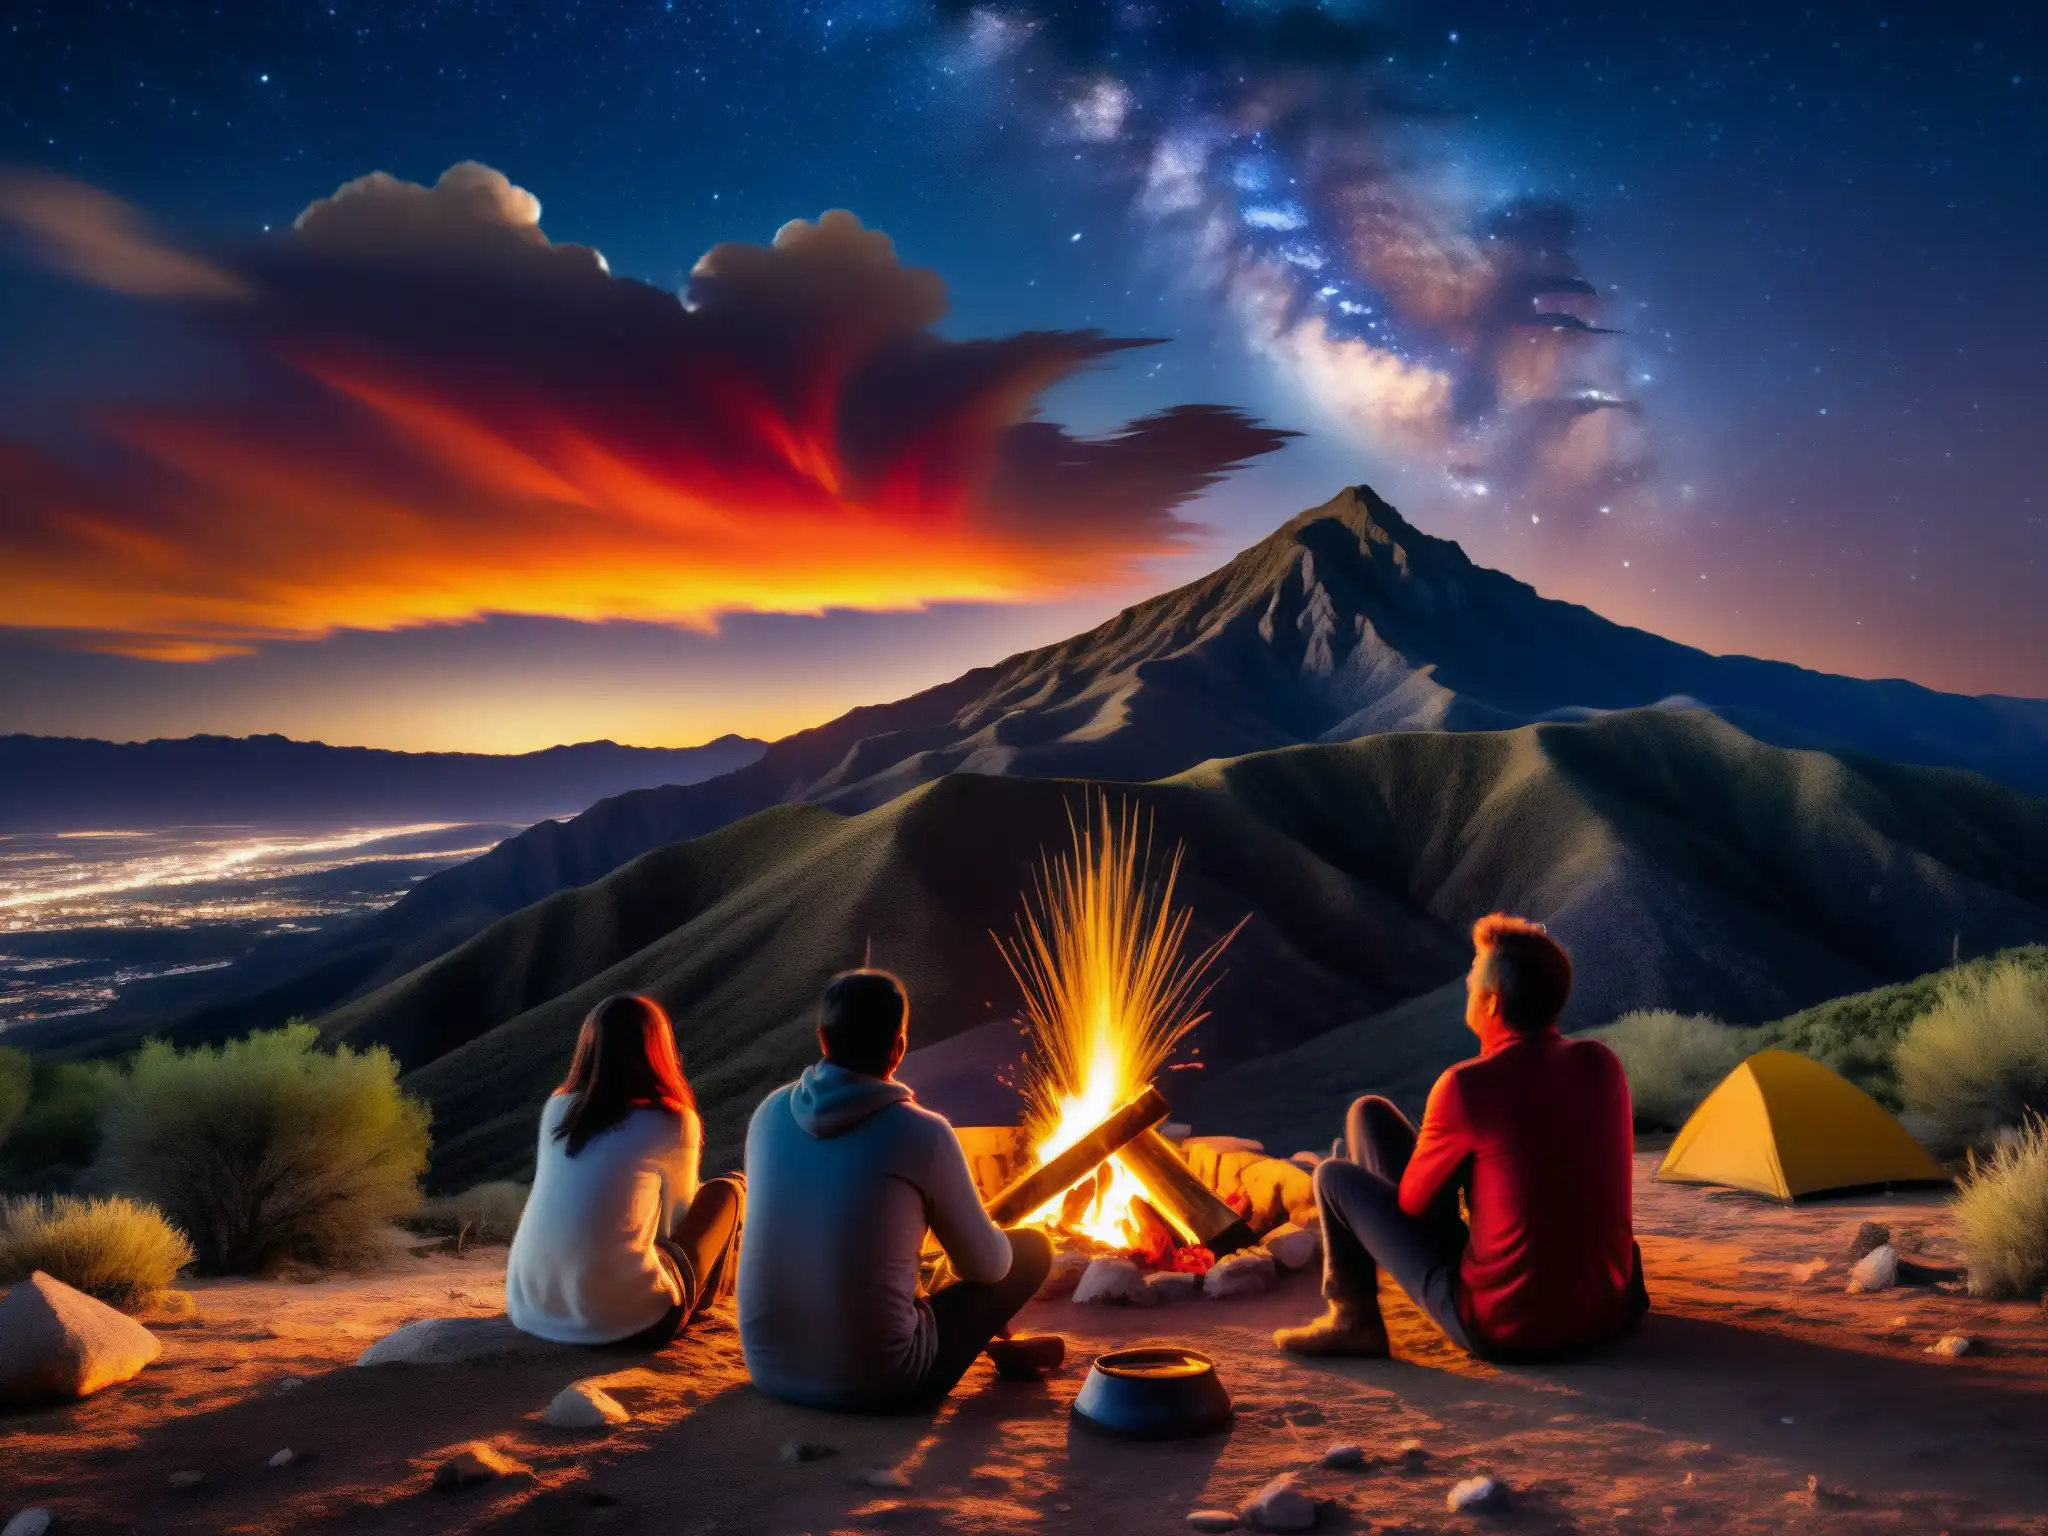 Un grupo de figuras místicas se reúne alrededor de una fogata, asombrados por la 'Bola de Fuego' en el cielo nocturno de México